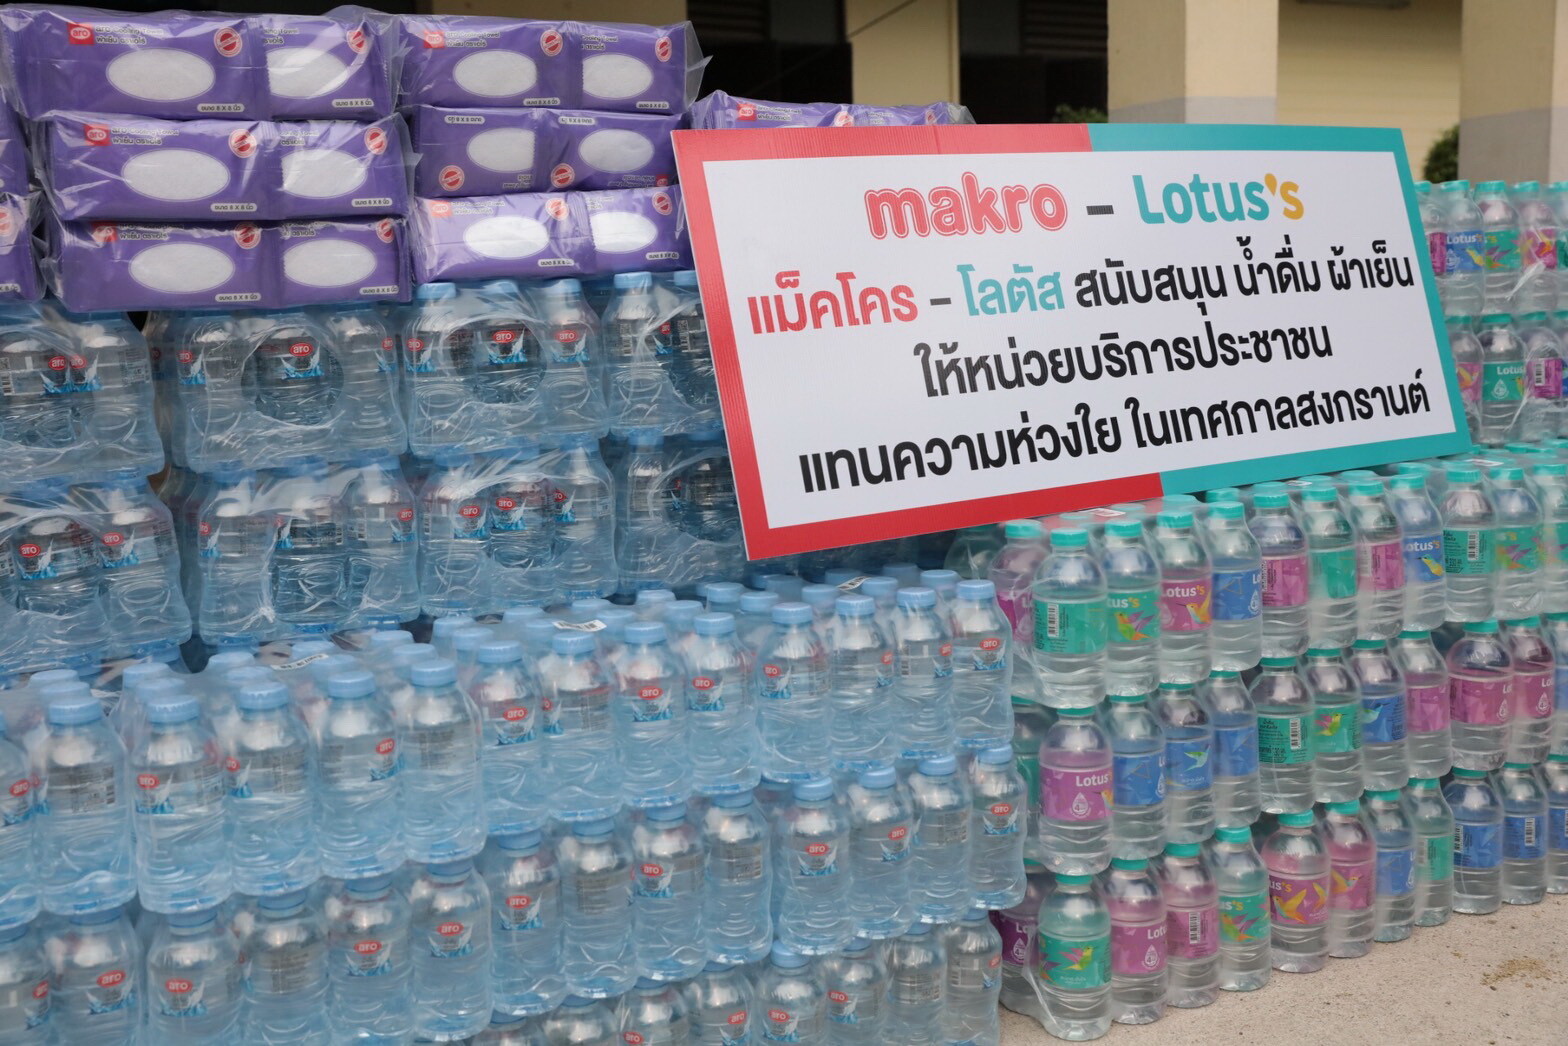 แม็คโคร และ โลตัส เคียงข้างสังคมไทย สนับสนุนจุดบริการประชาชน ช่วงเดินทางสงกรานต์